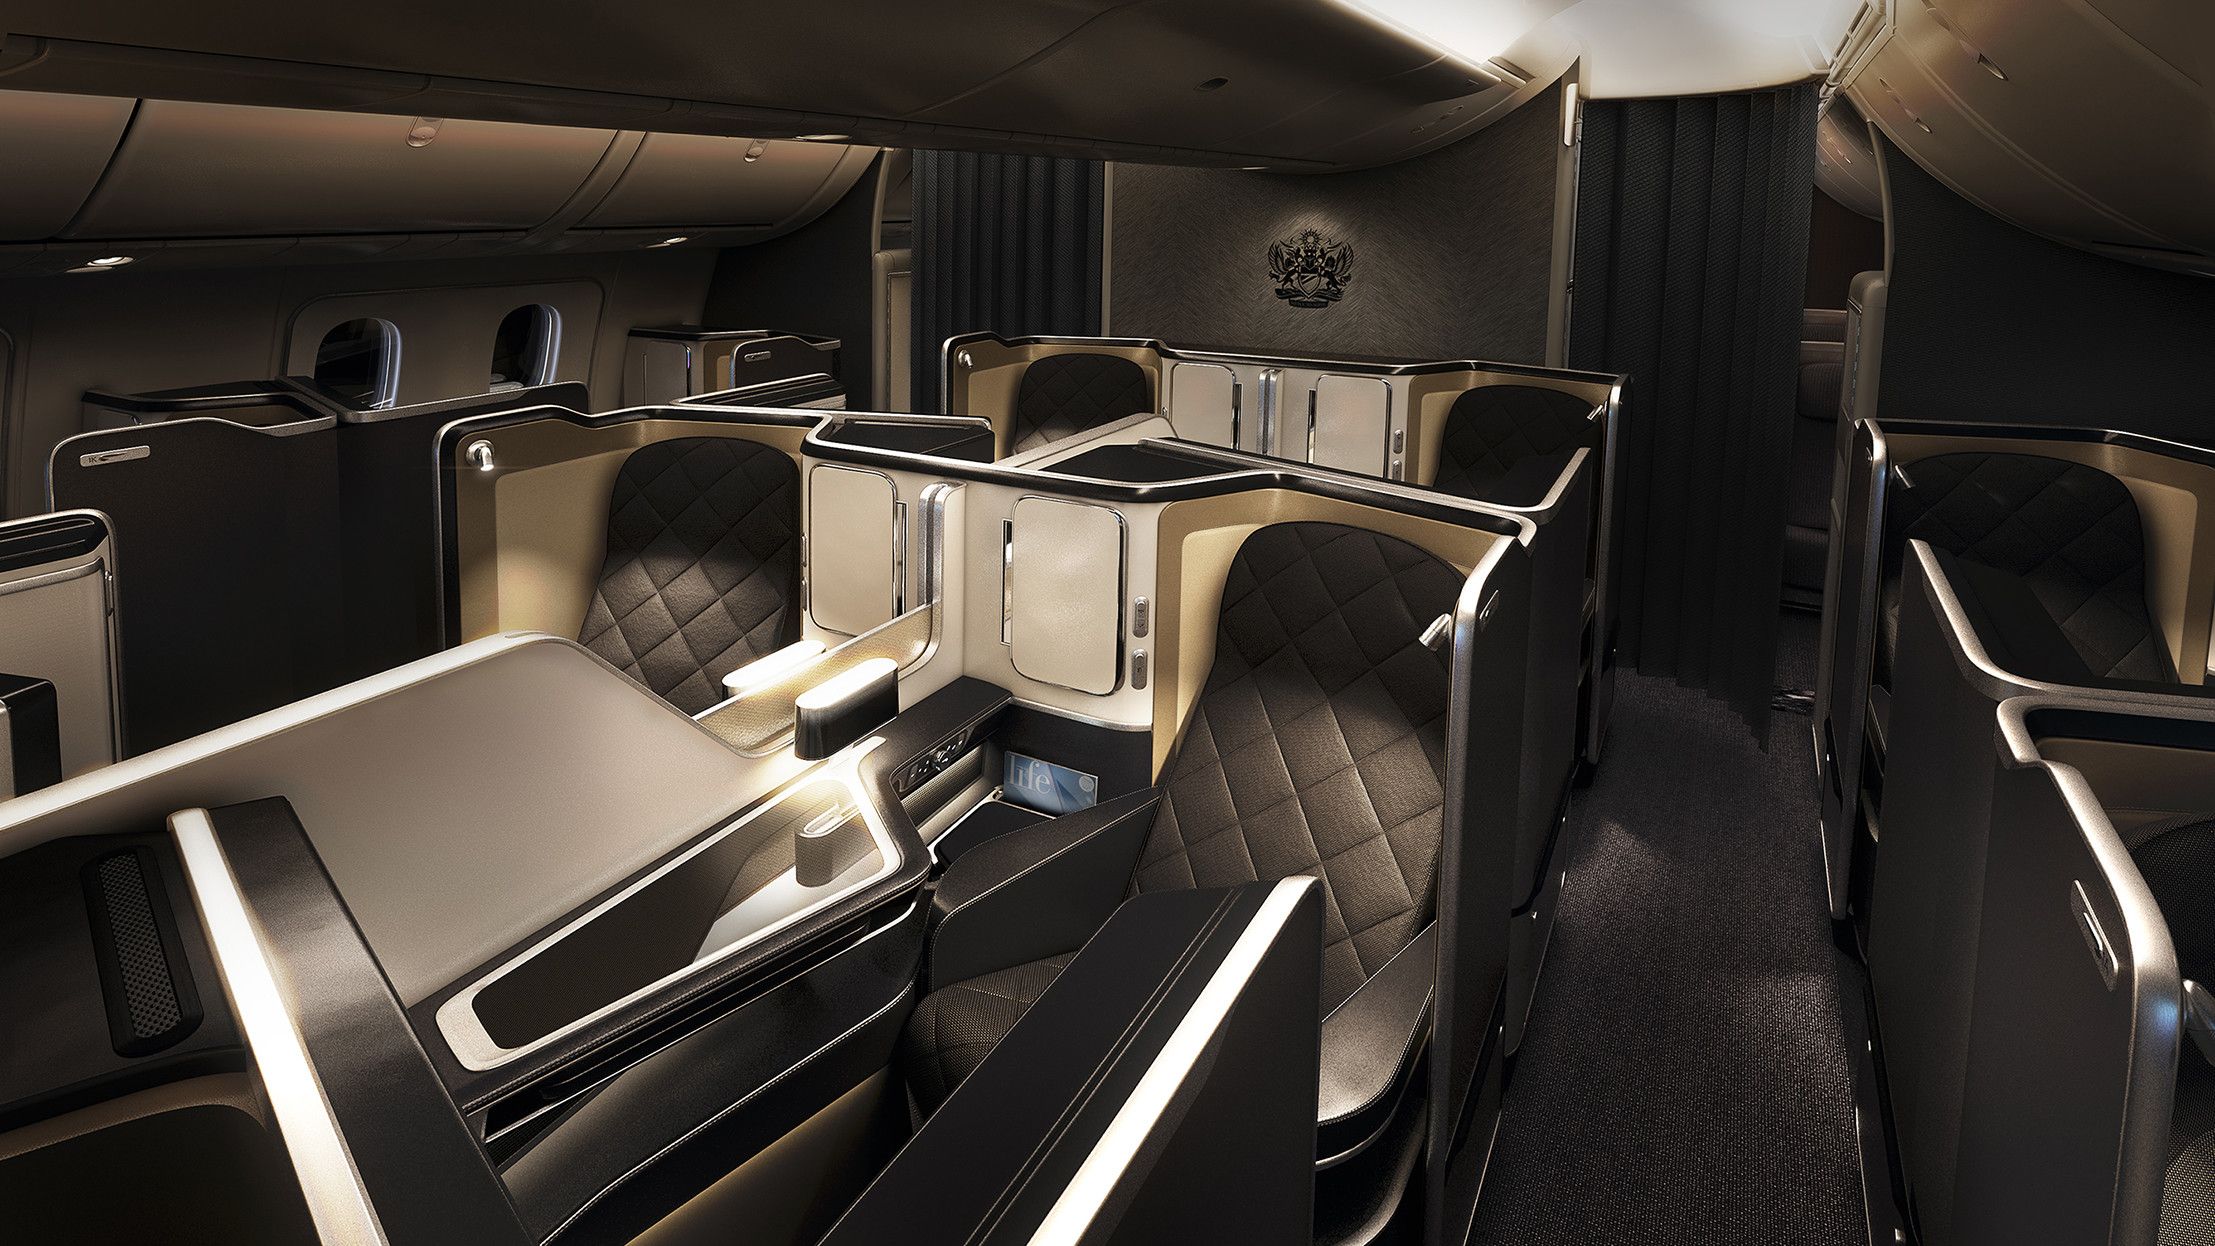 Inside the British Airways Boeing 787-9 First Class Cabin.